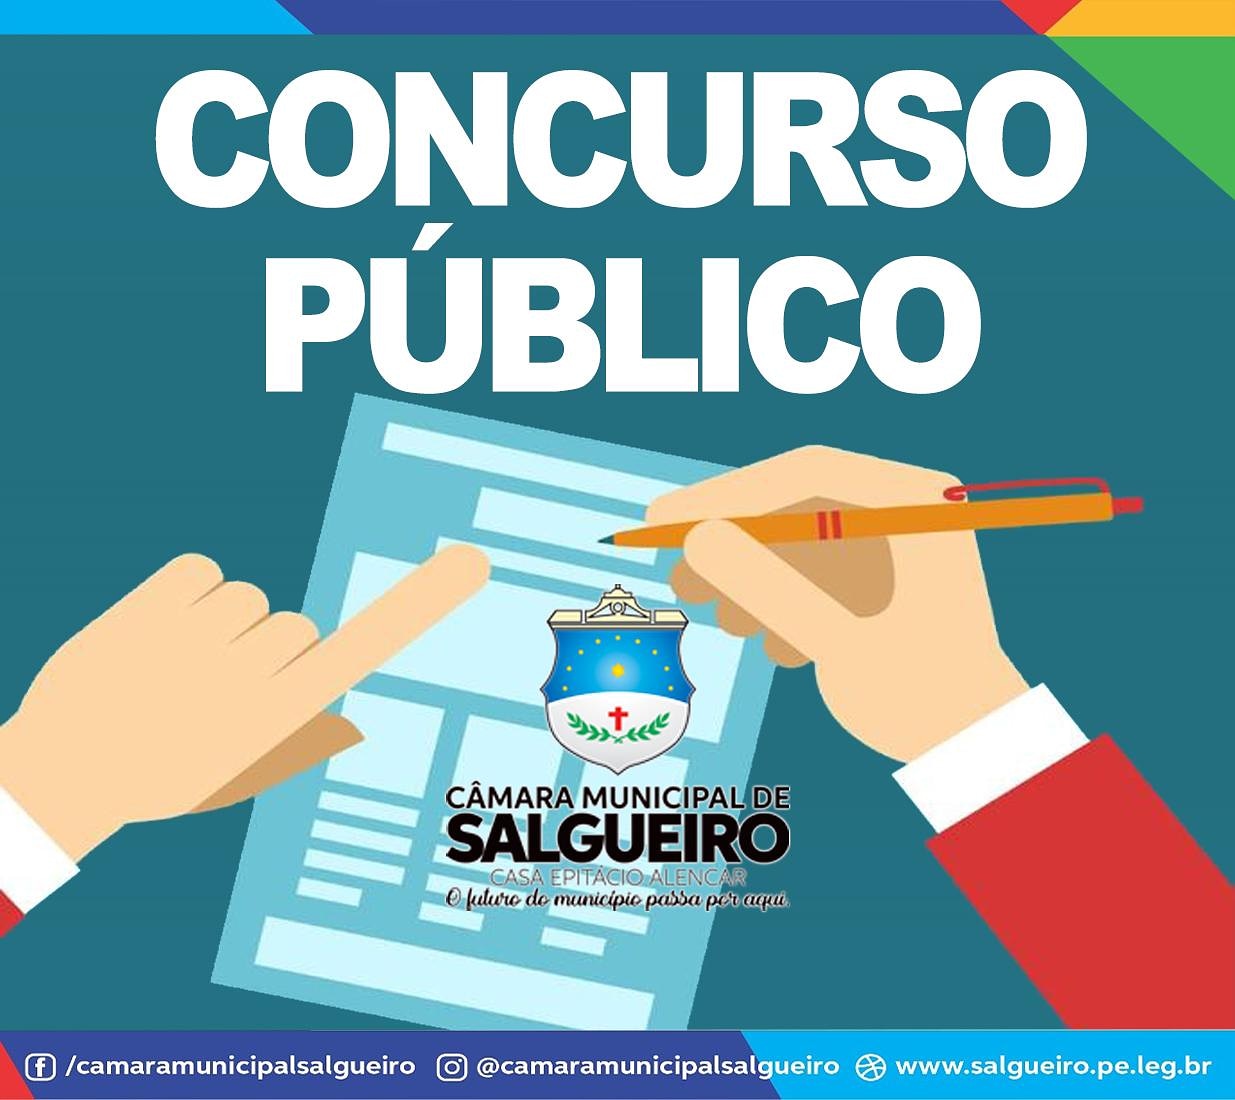 Concurso Público da Câmara Municipal de Salgueiro 2019